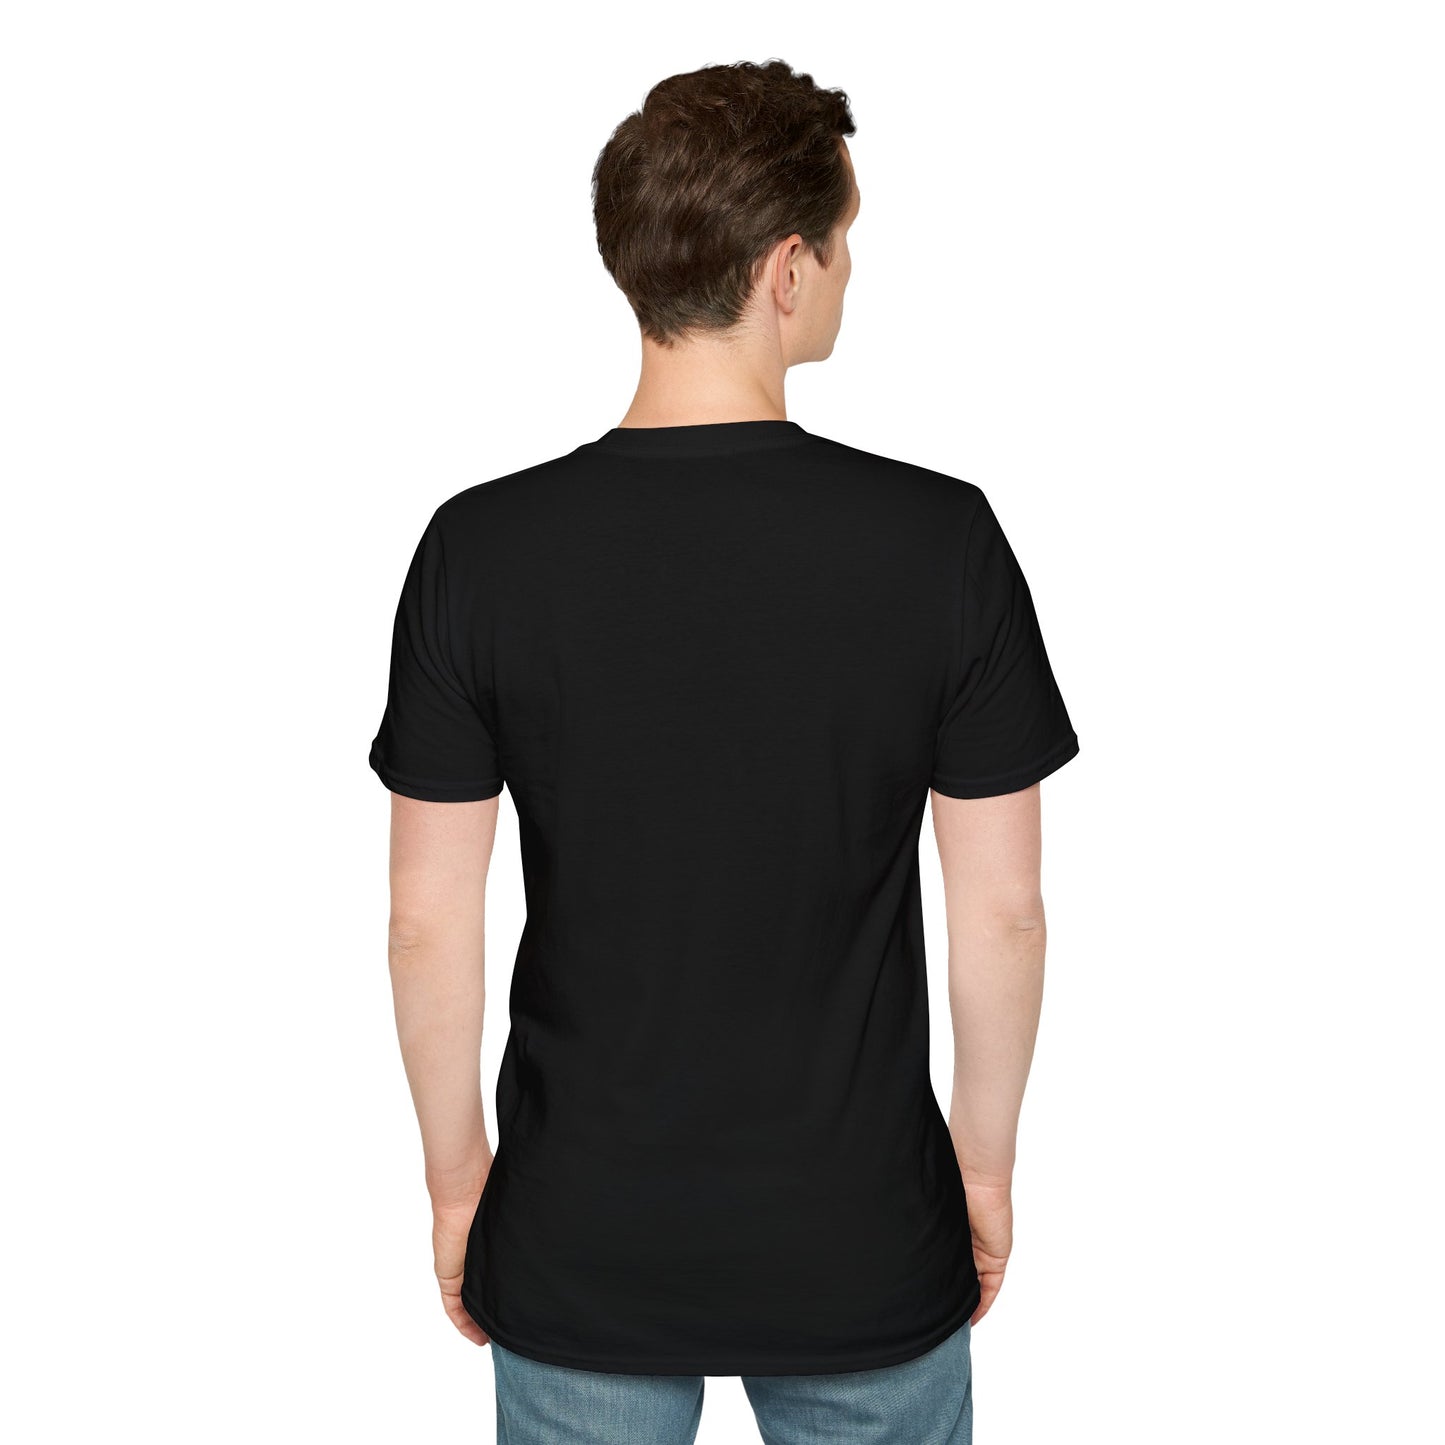 TG-26 Unisex Softstyle T-Shirt